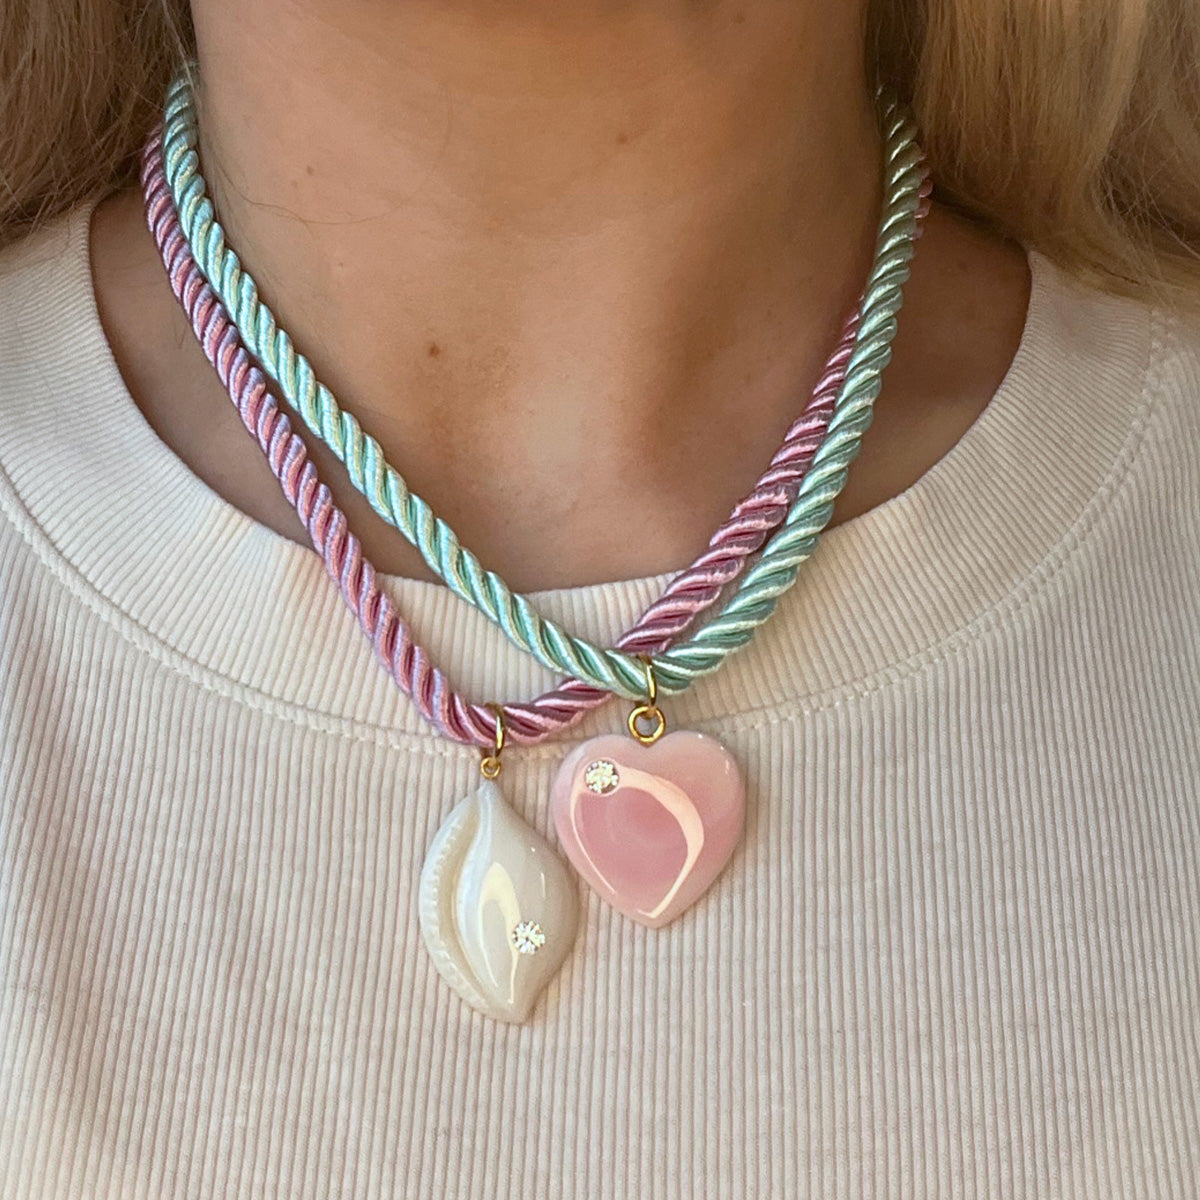 Seaside Souvenir Necklace, Shell